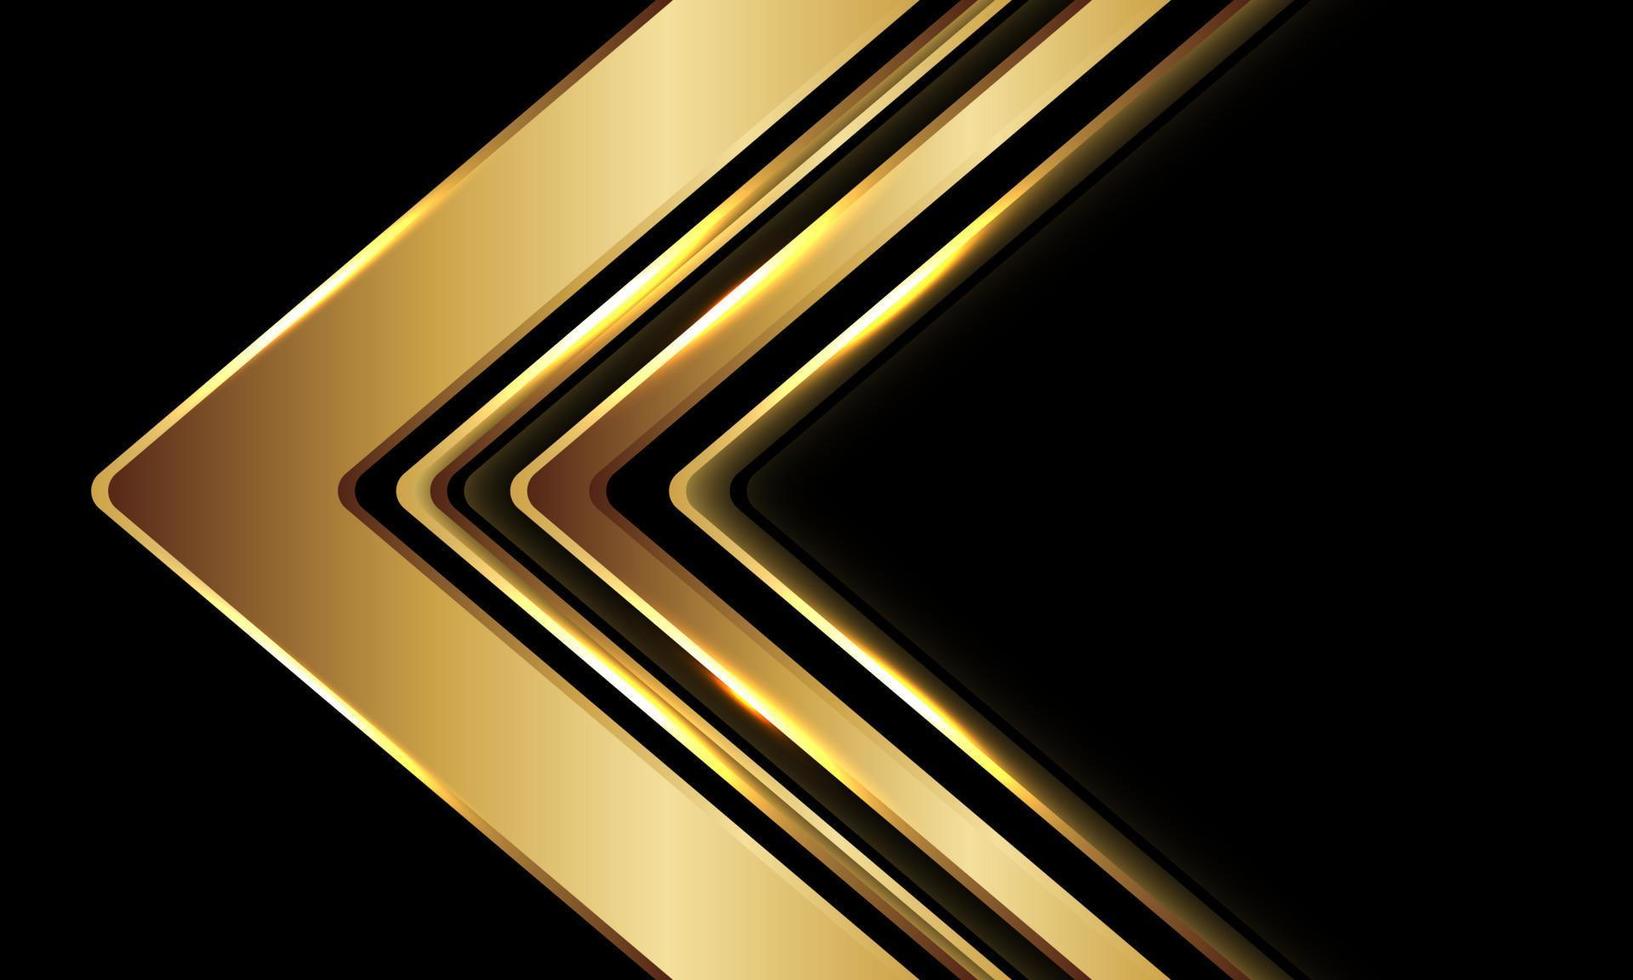 Dirección de flecha de oro abstracto geométrico en diseño negro vector de fondo de tecnología futurista moderna